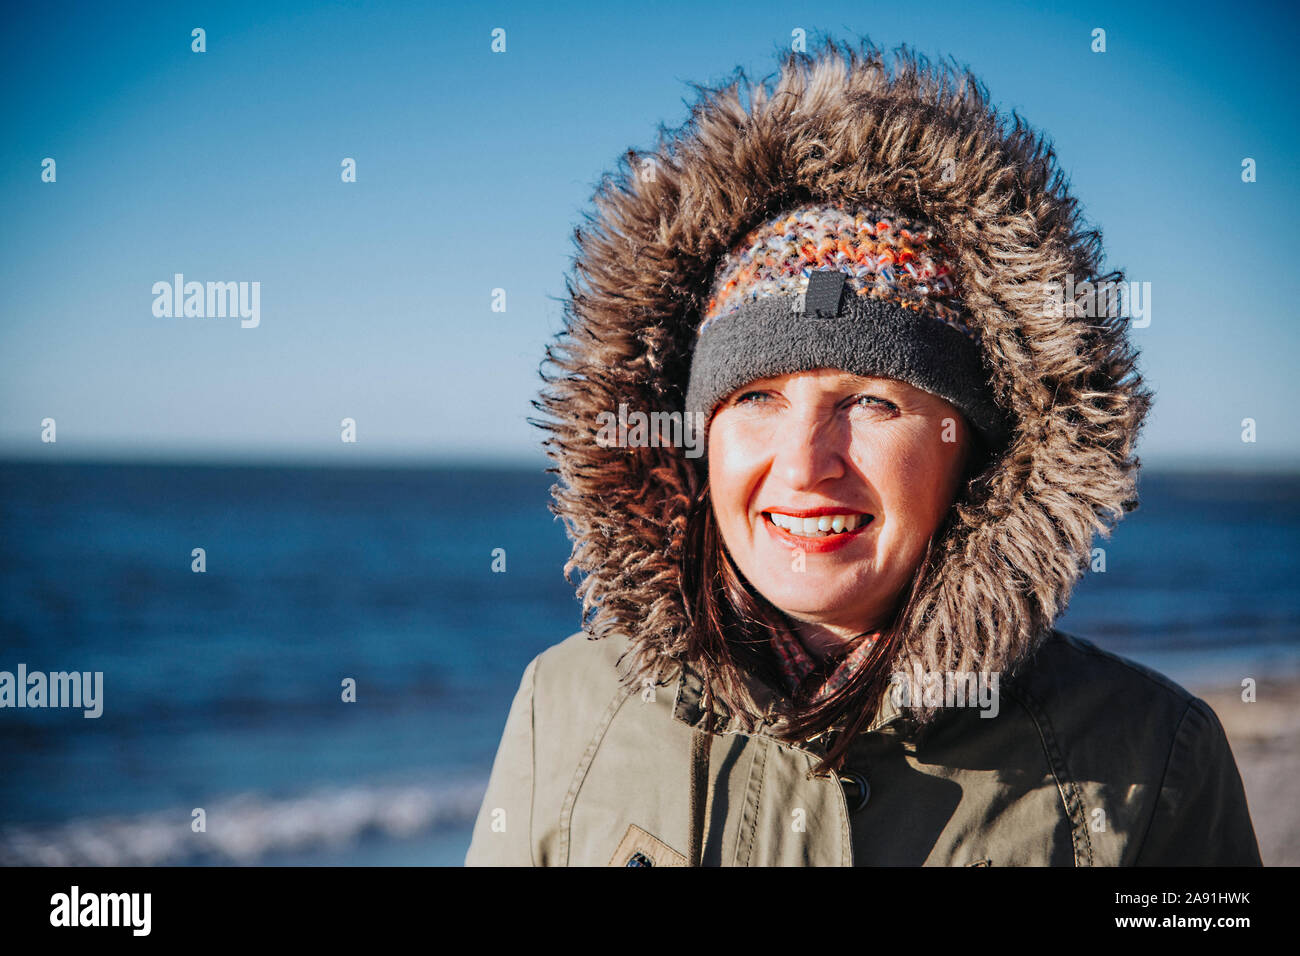 Smiling woman at sea Stock Photo